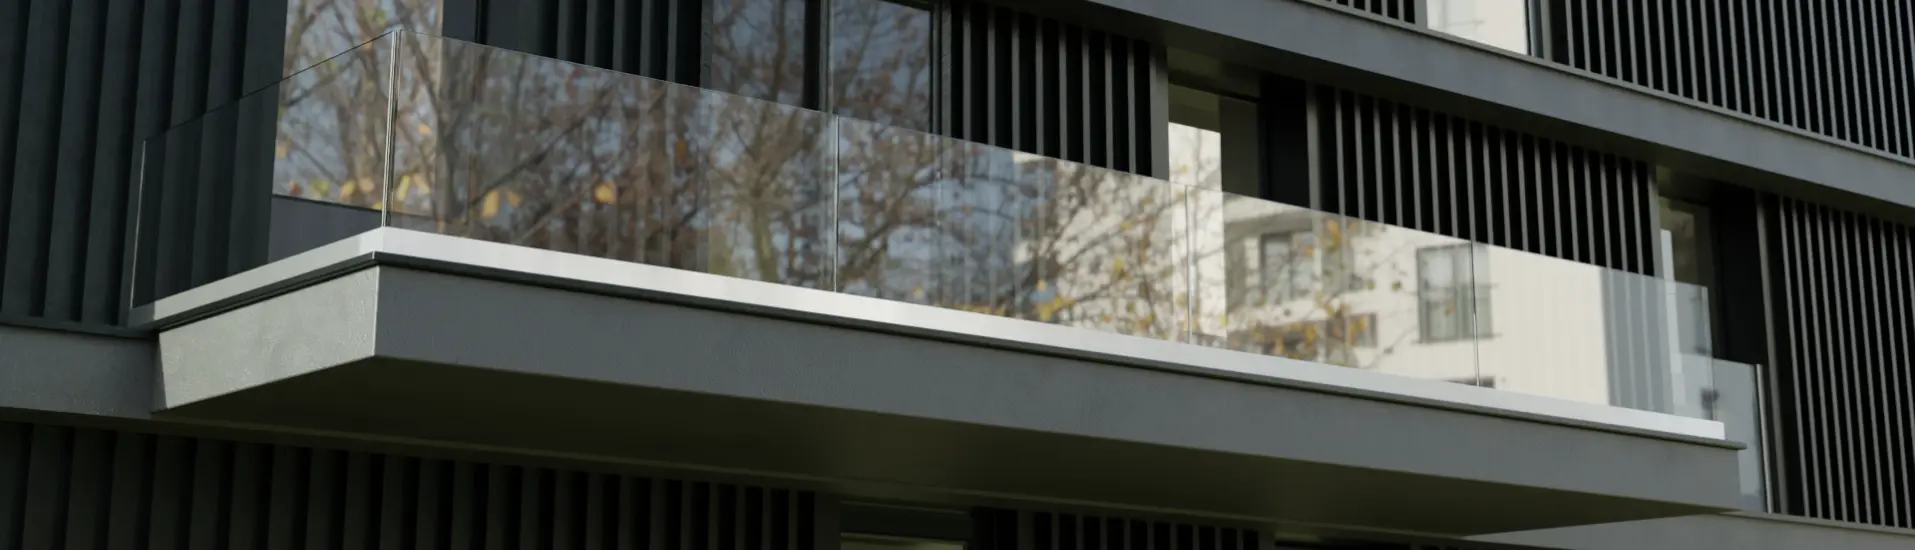 Immeuble en copropriété pourvu des balustrades en verre aux fenêtres coulissantes et un garde-corps en verre sur le toit terrasse